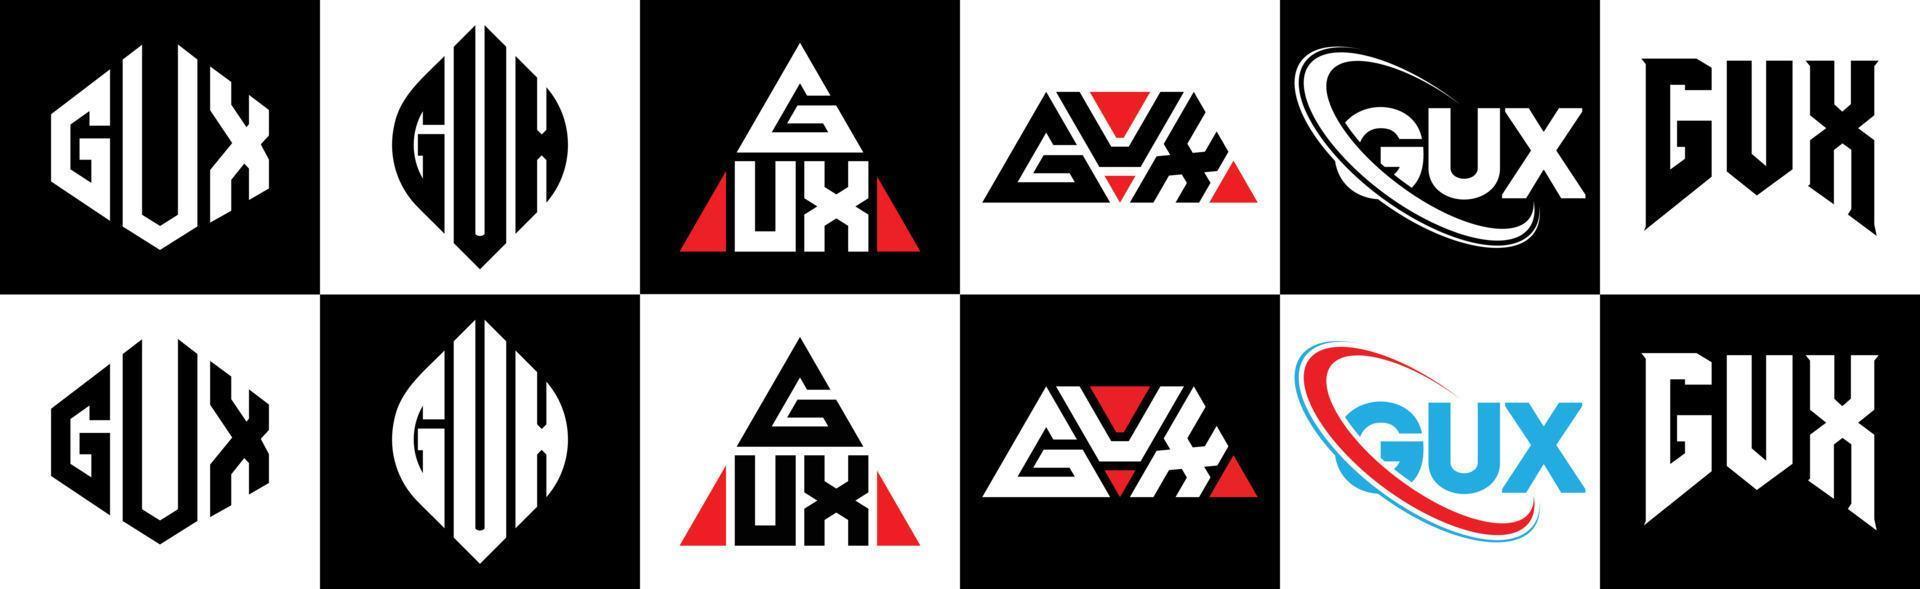 Gux-Buchstaben-Logo-Design in sechs Stilen. Gux-Polygon, Kreis, Dreieck, Sechseck, flacher und einfacher Stil mit schwarz-weißem Buchstabenlogo in einer Zeichenfläche. Gux minimalistisches und klassisches Logo vektor